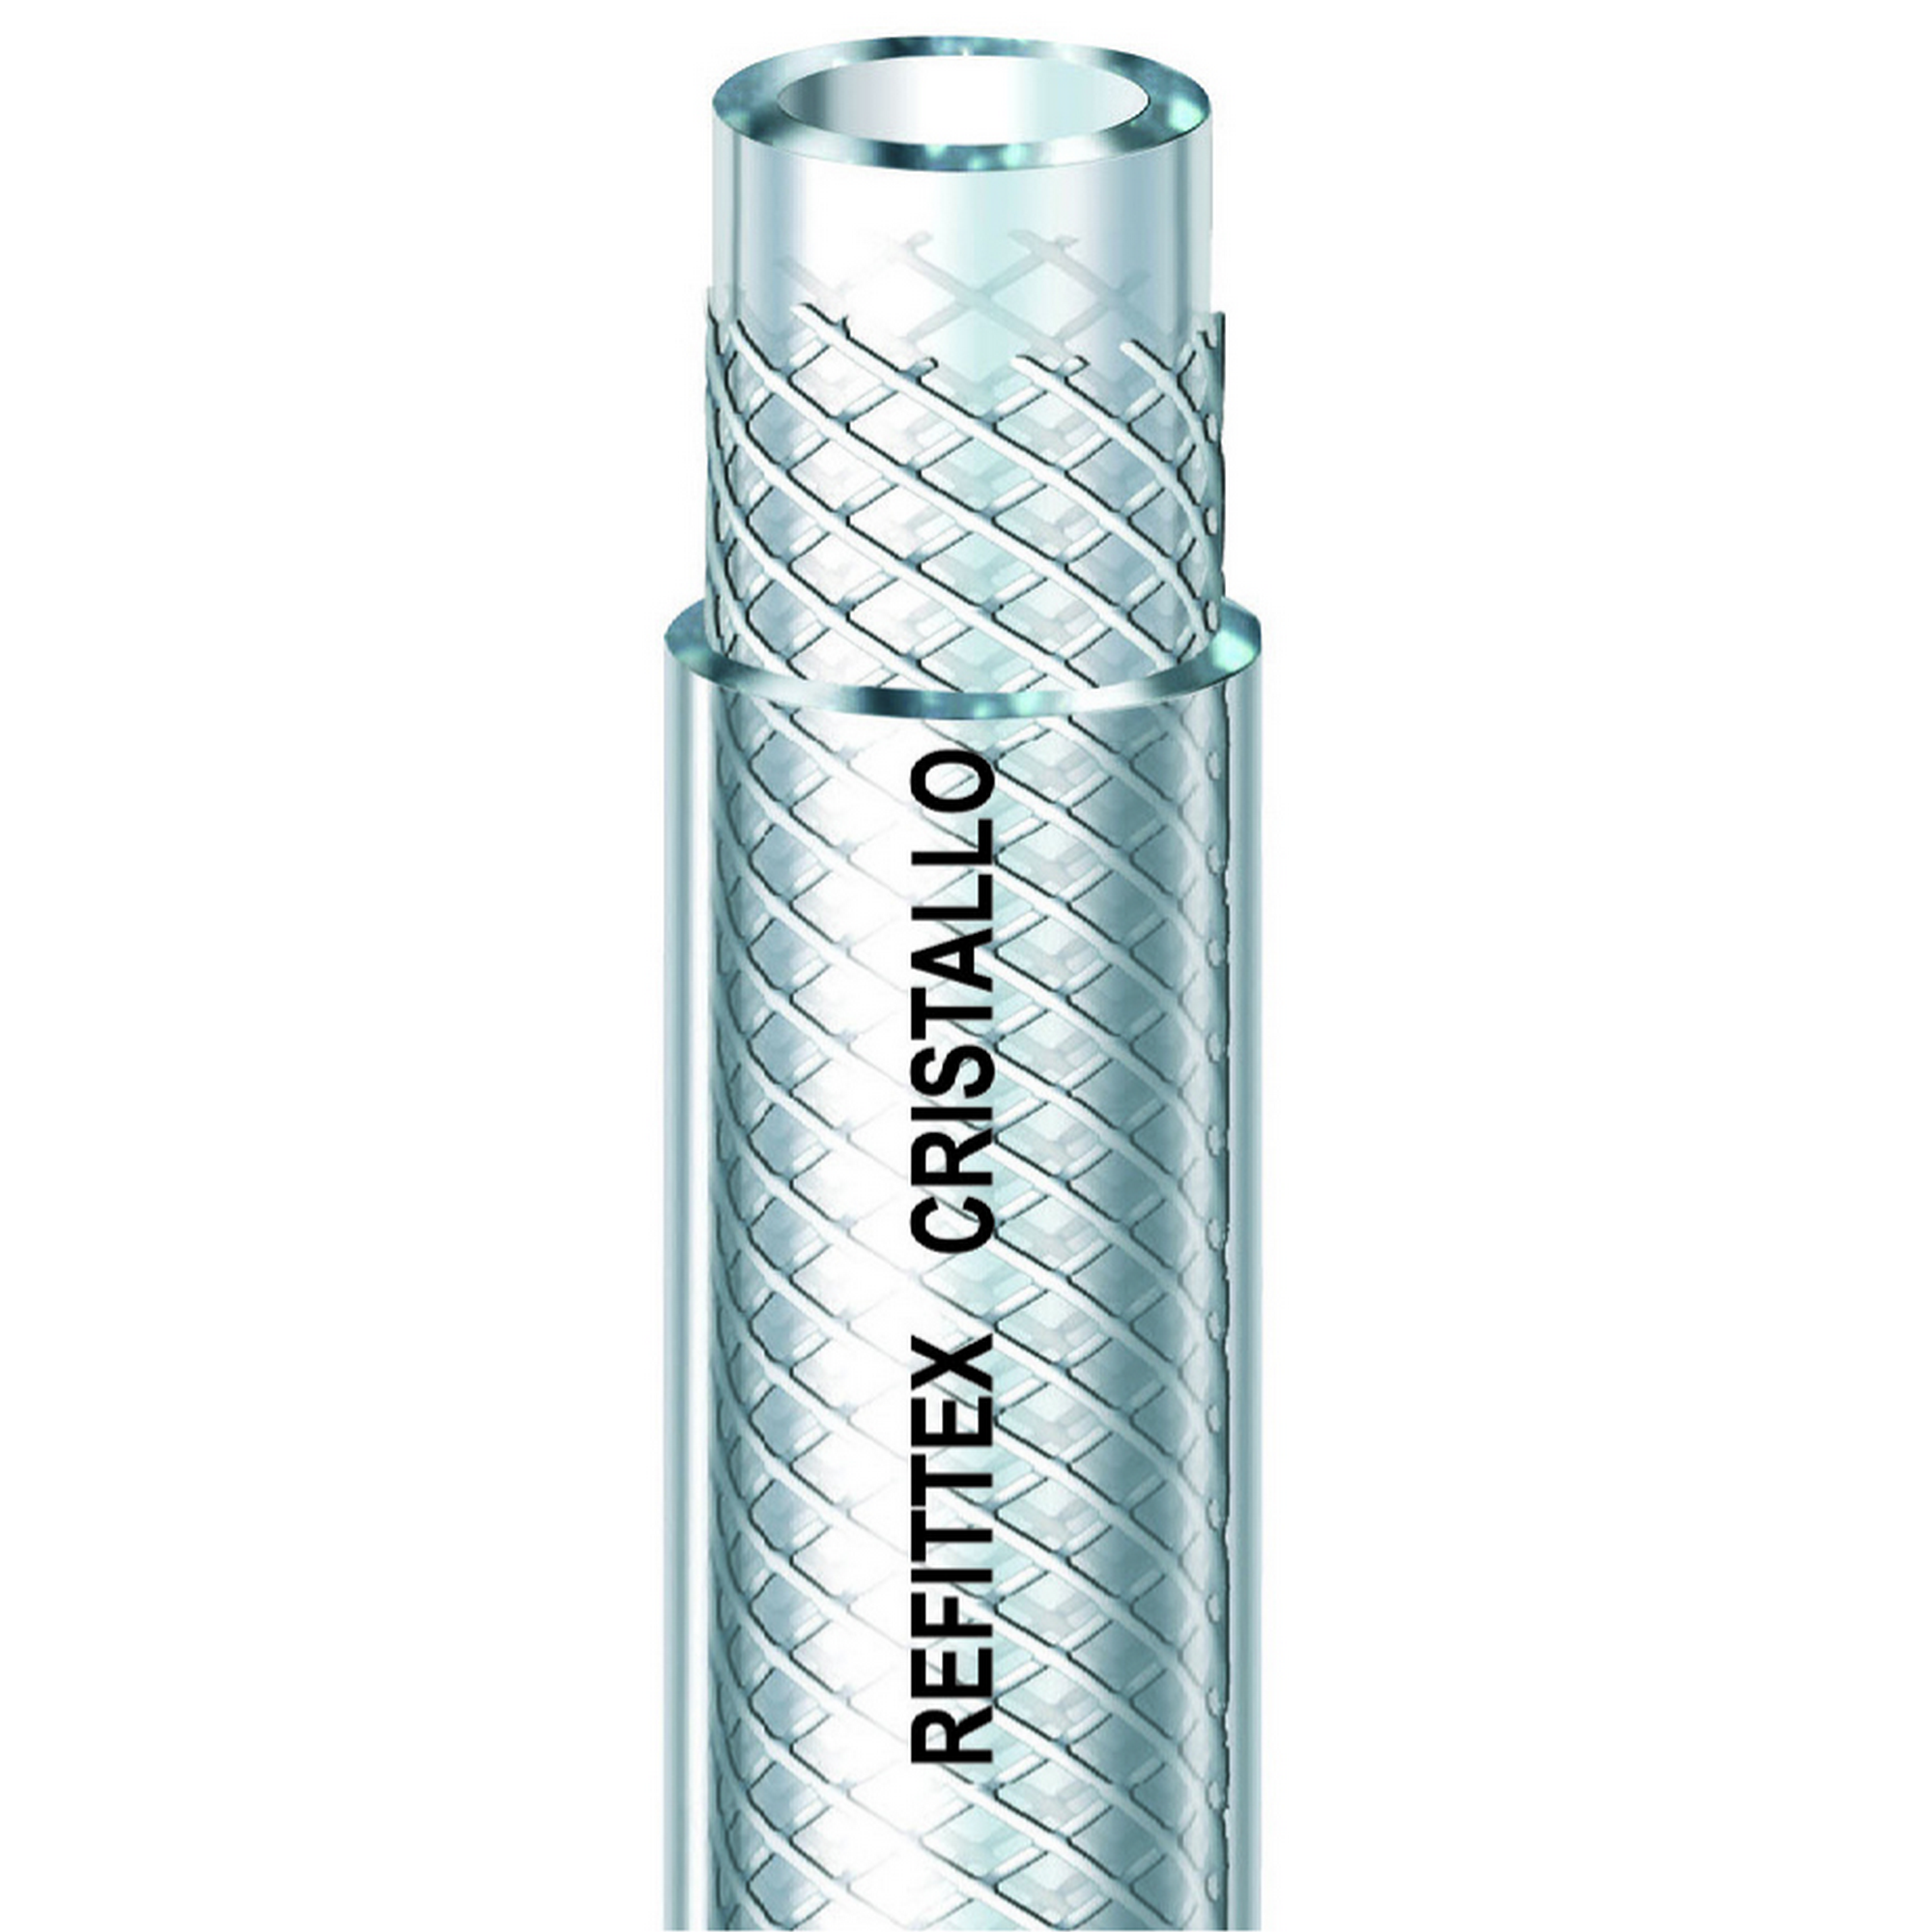 Gewebeschlauch 'Refittex Cristallo' transparent Ø 16 mm + product picture